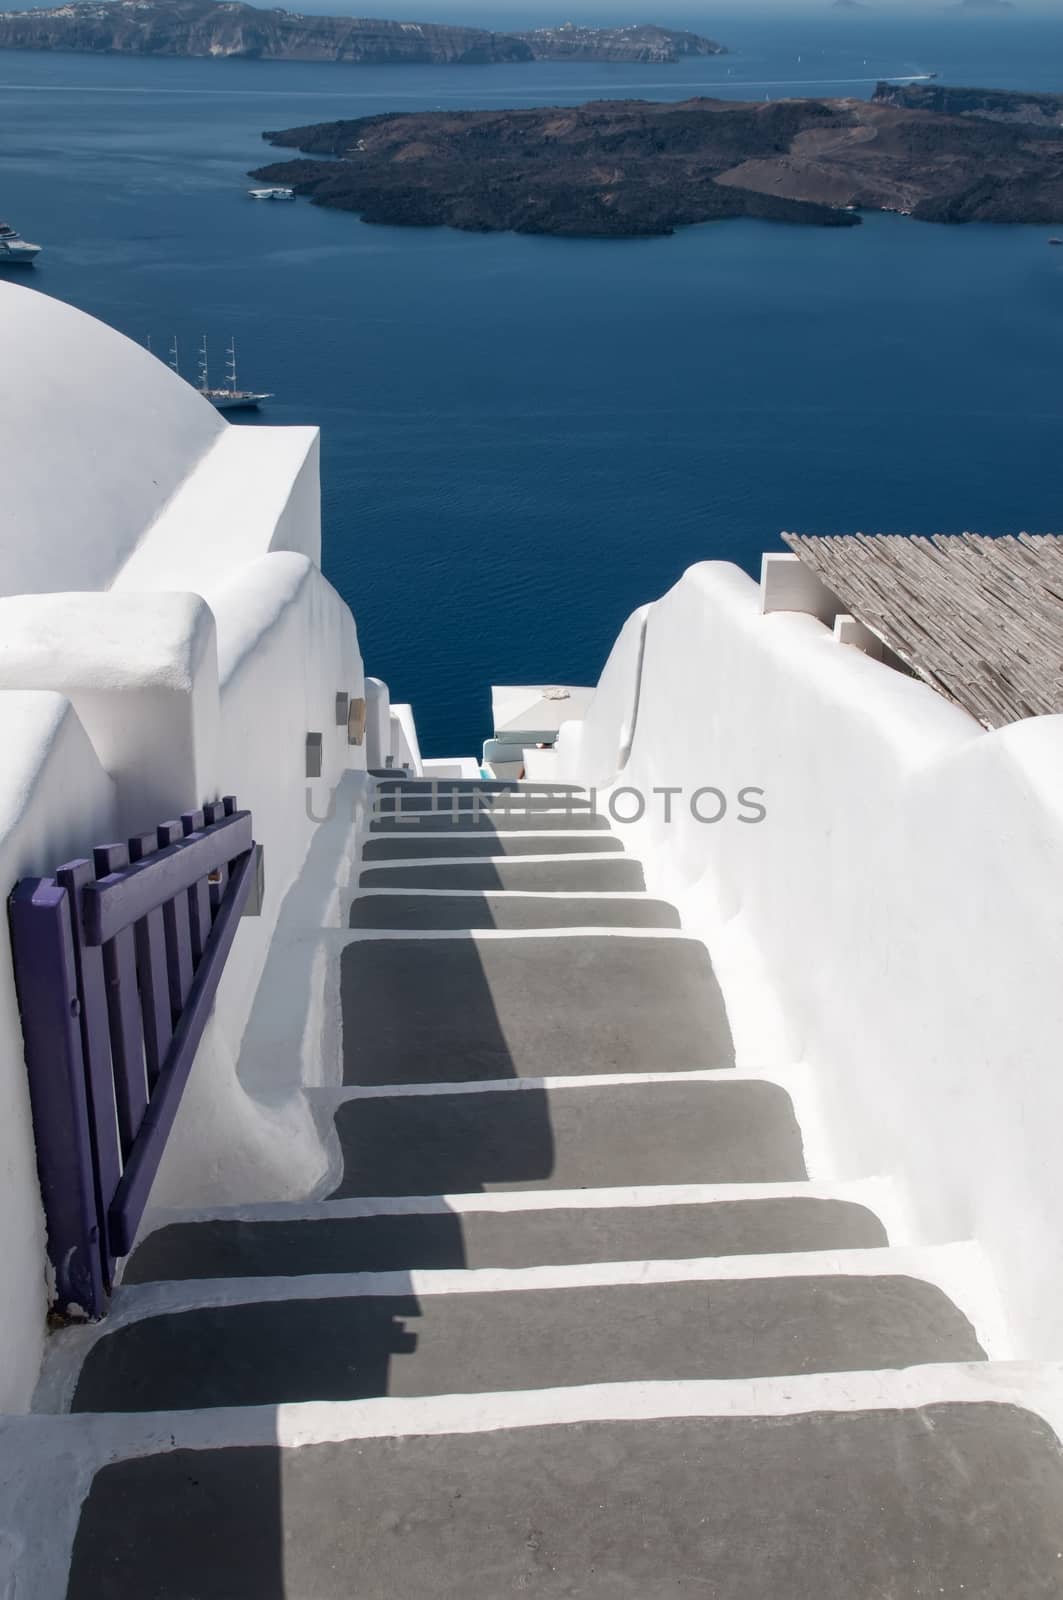 Narrow staircase in Oia, Santorini by mitakag